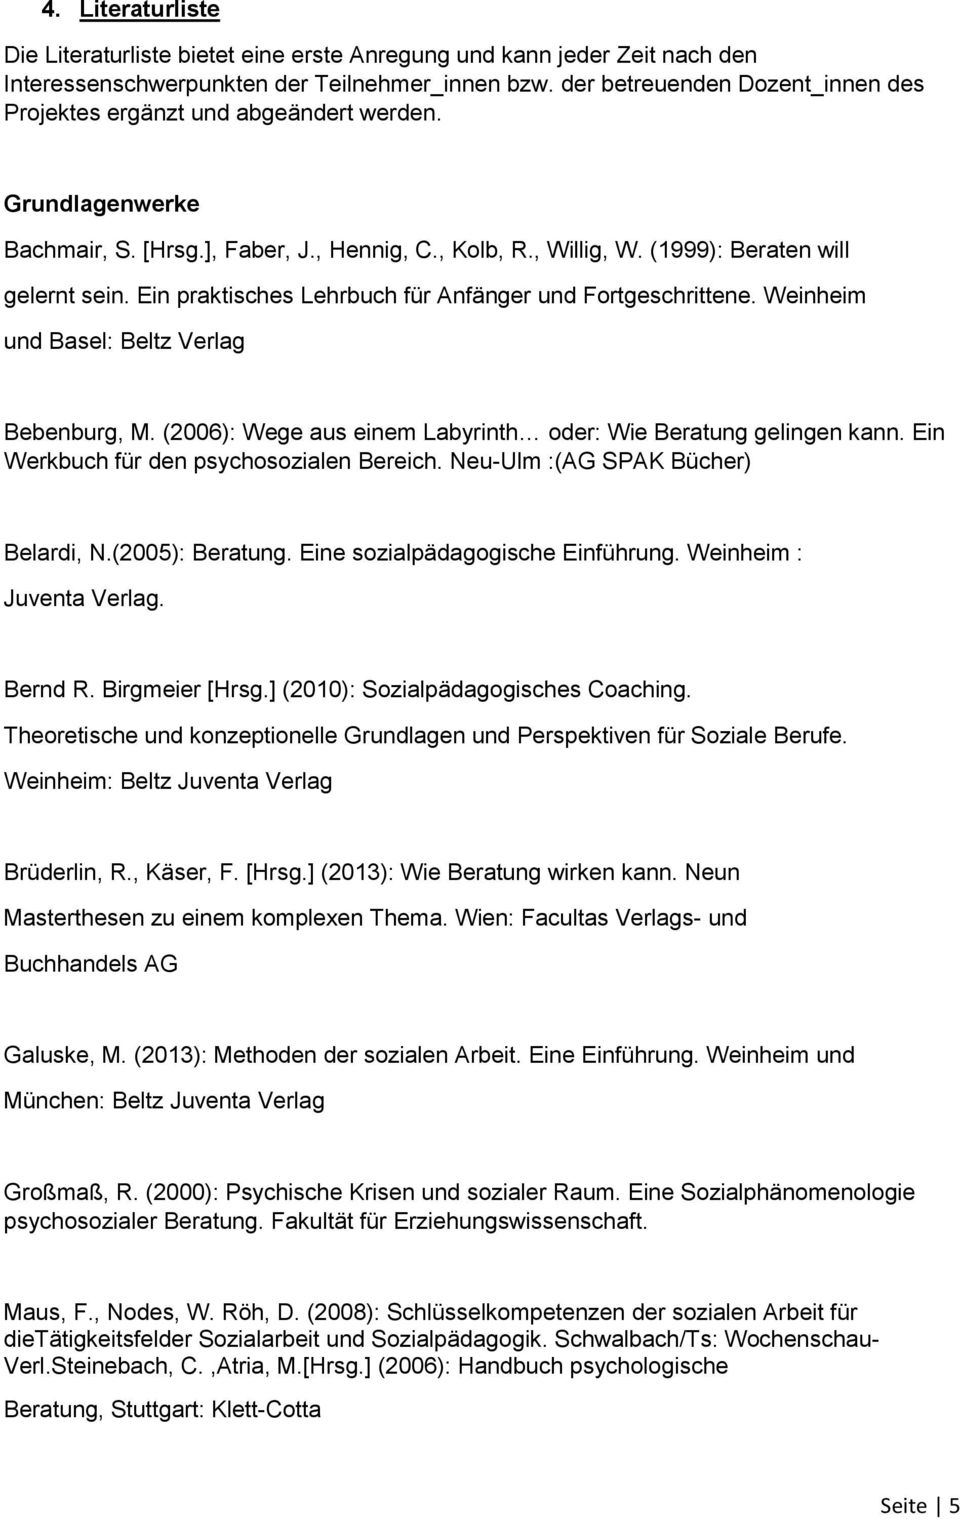 Ein praktisches Lehrbuch für Anfänger und Fortgeschrittene. Weinheim und Basel: Beltz Verlag Bebenburg, M. (2006): Wege aus einem Labyrinth oder: Wie Beratung gelingen kann.